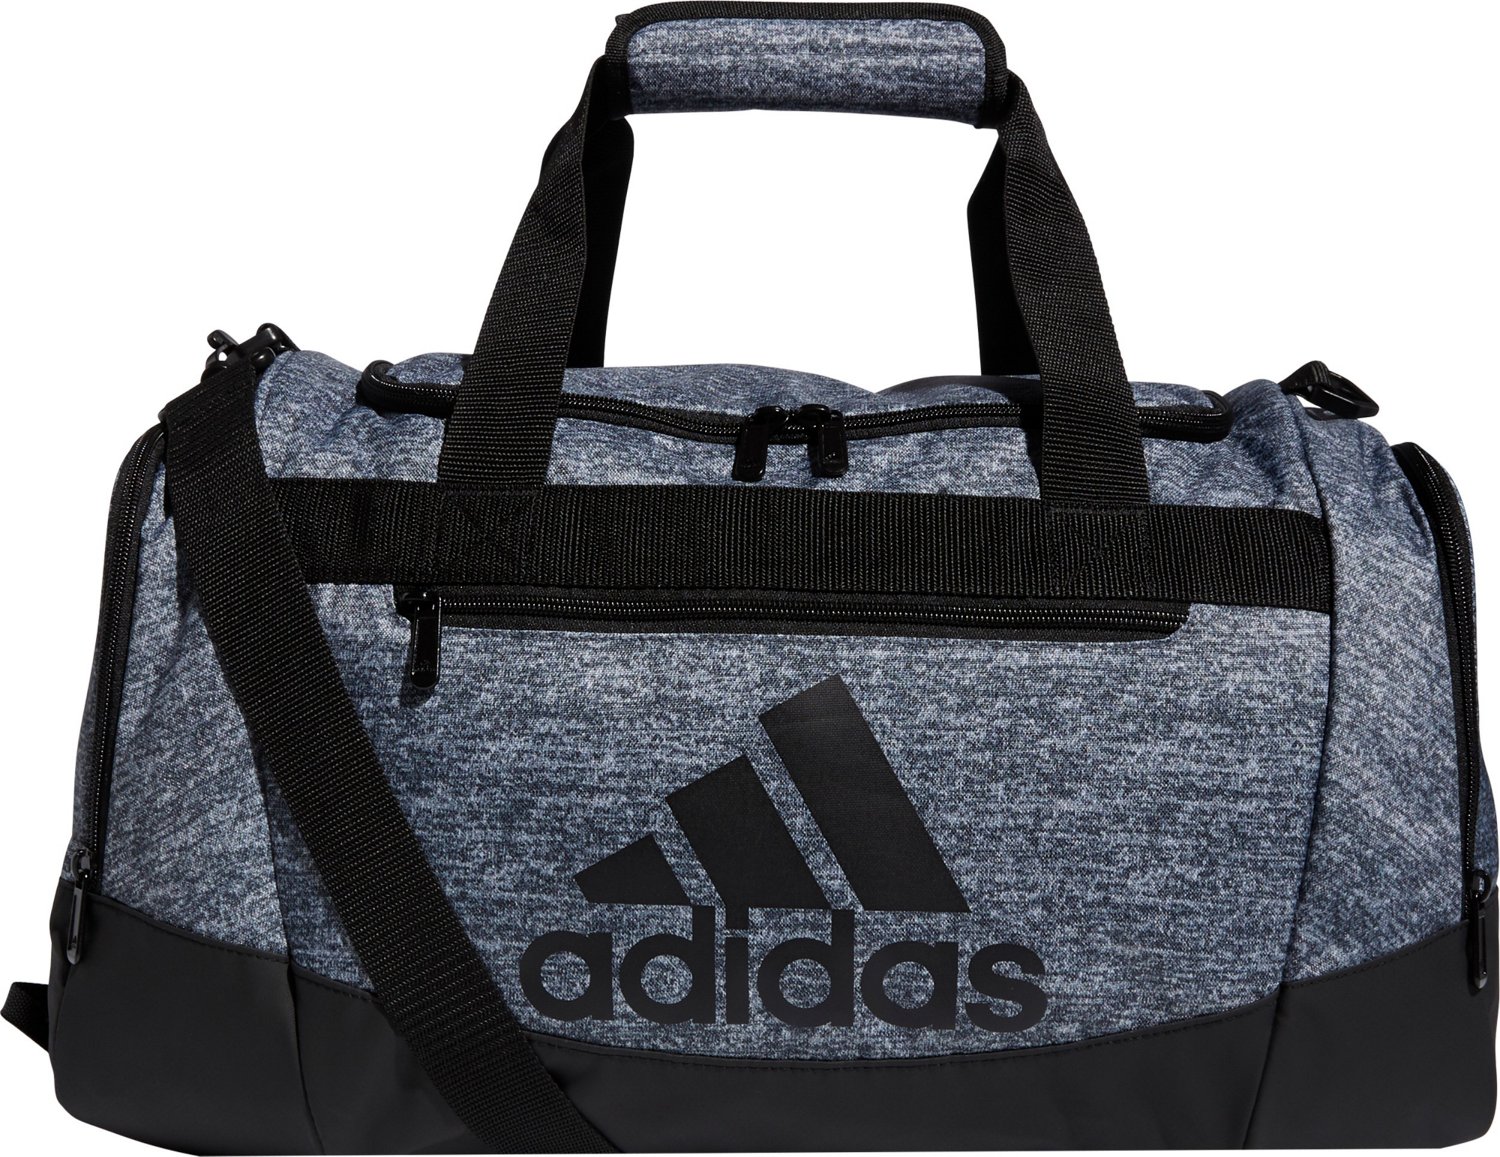 adidas Defender IV Duffel Bag | Academy